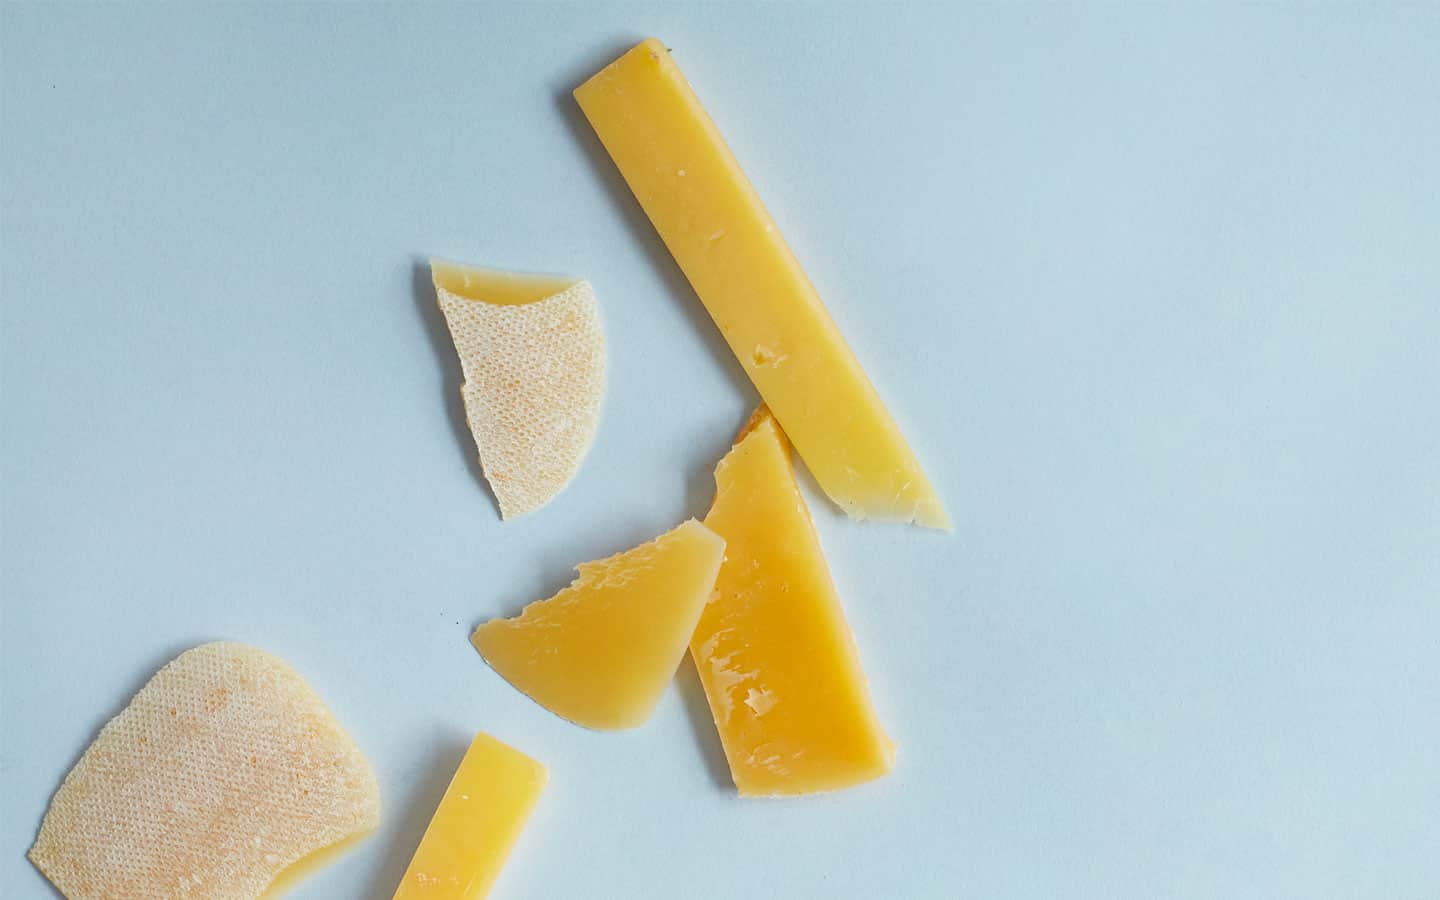 Sådan kan du bruge dine osteskorper. Har du rester af ost og osteskorper liggende i køleskabet? Så får du her opskrifter og tips til at få brugt dine osterester.